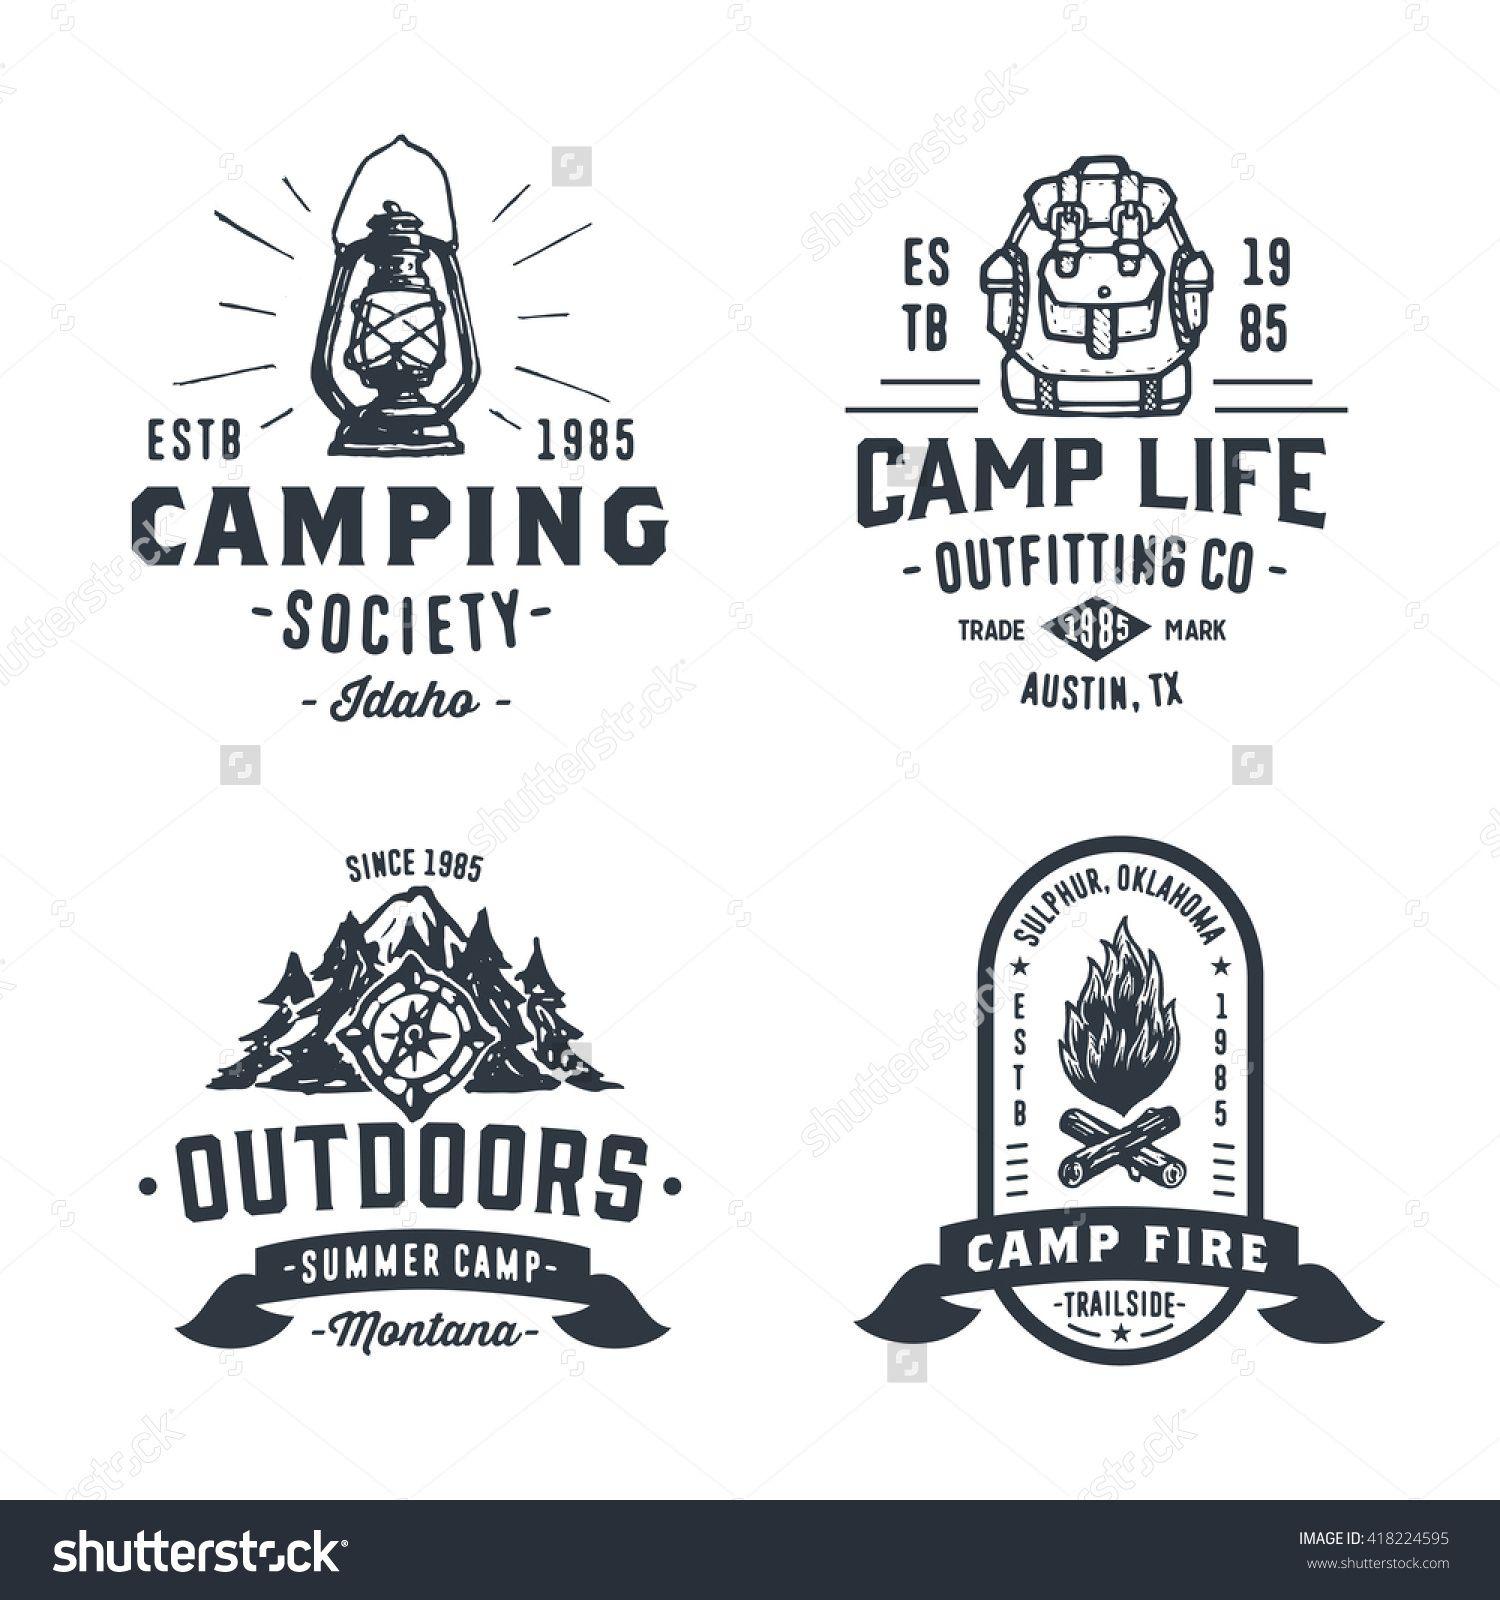 Old School Logo - Set of Retro Camping Outdoor Badges, Old School Logos, Vintage